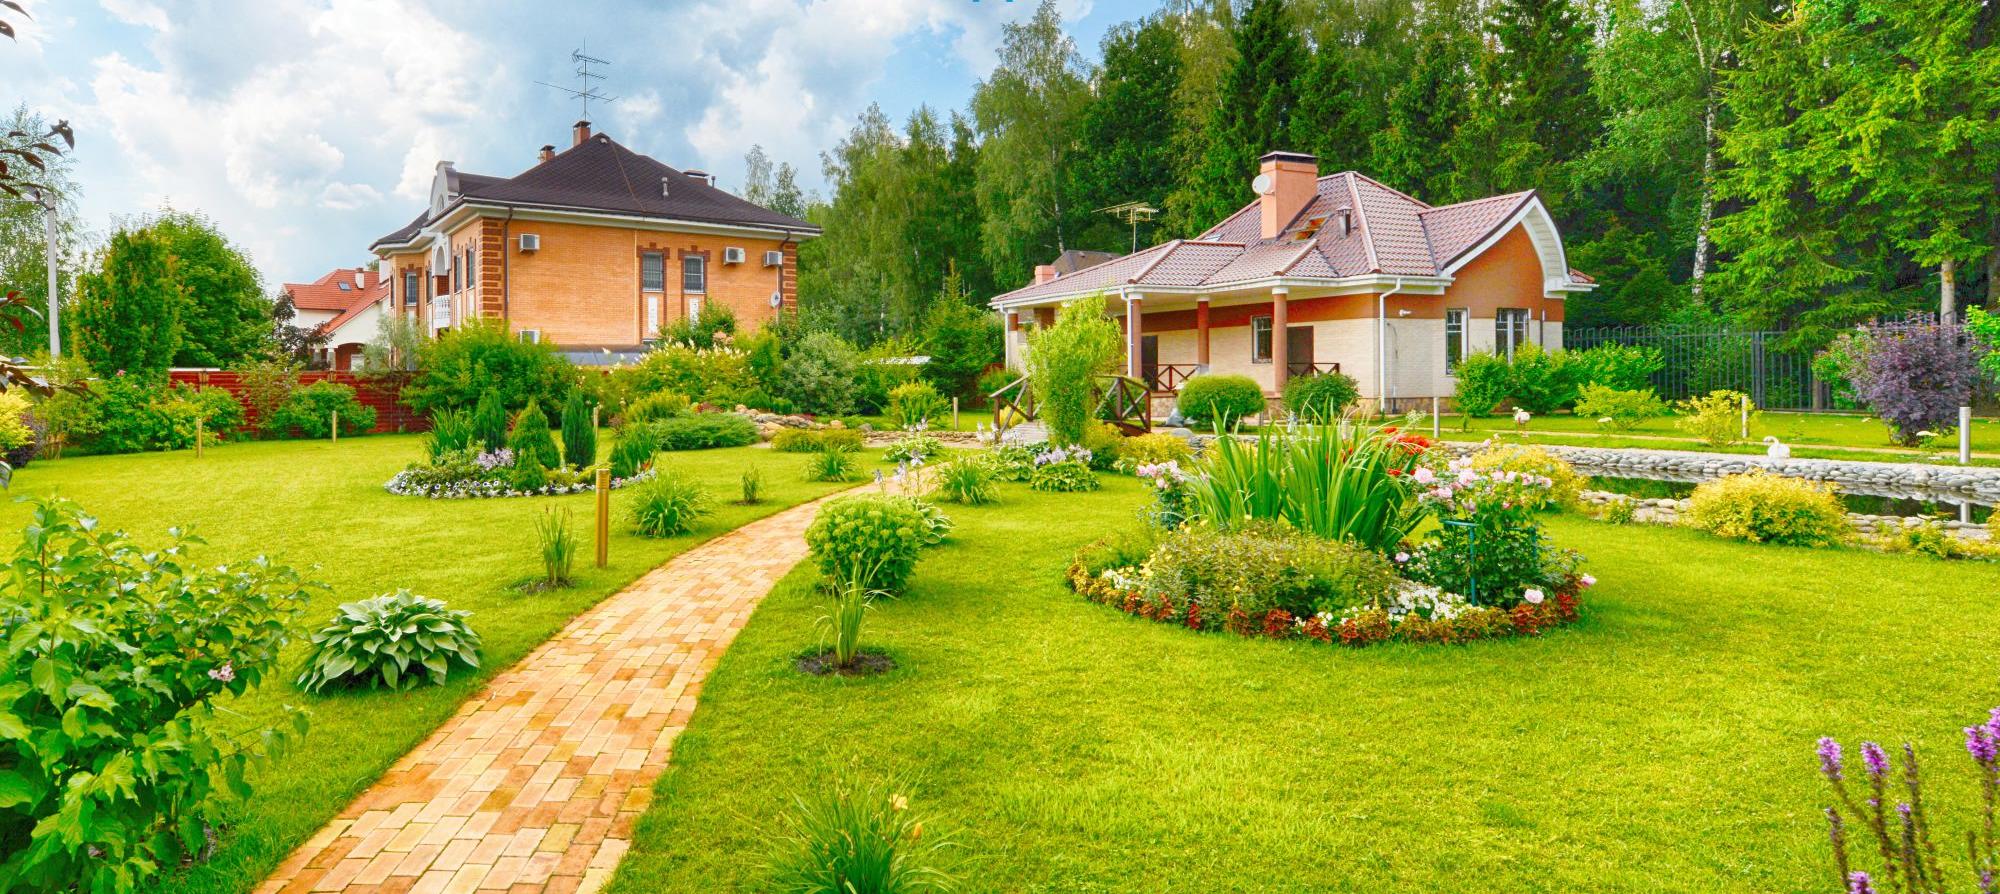 Роскошные коттеджи вблизи Барнаула стали массово продавать в ипотеку под 2,7%